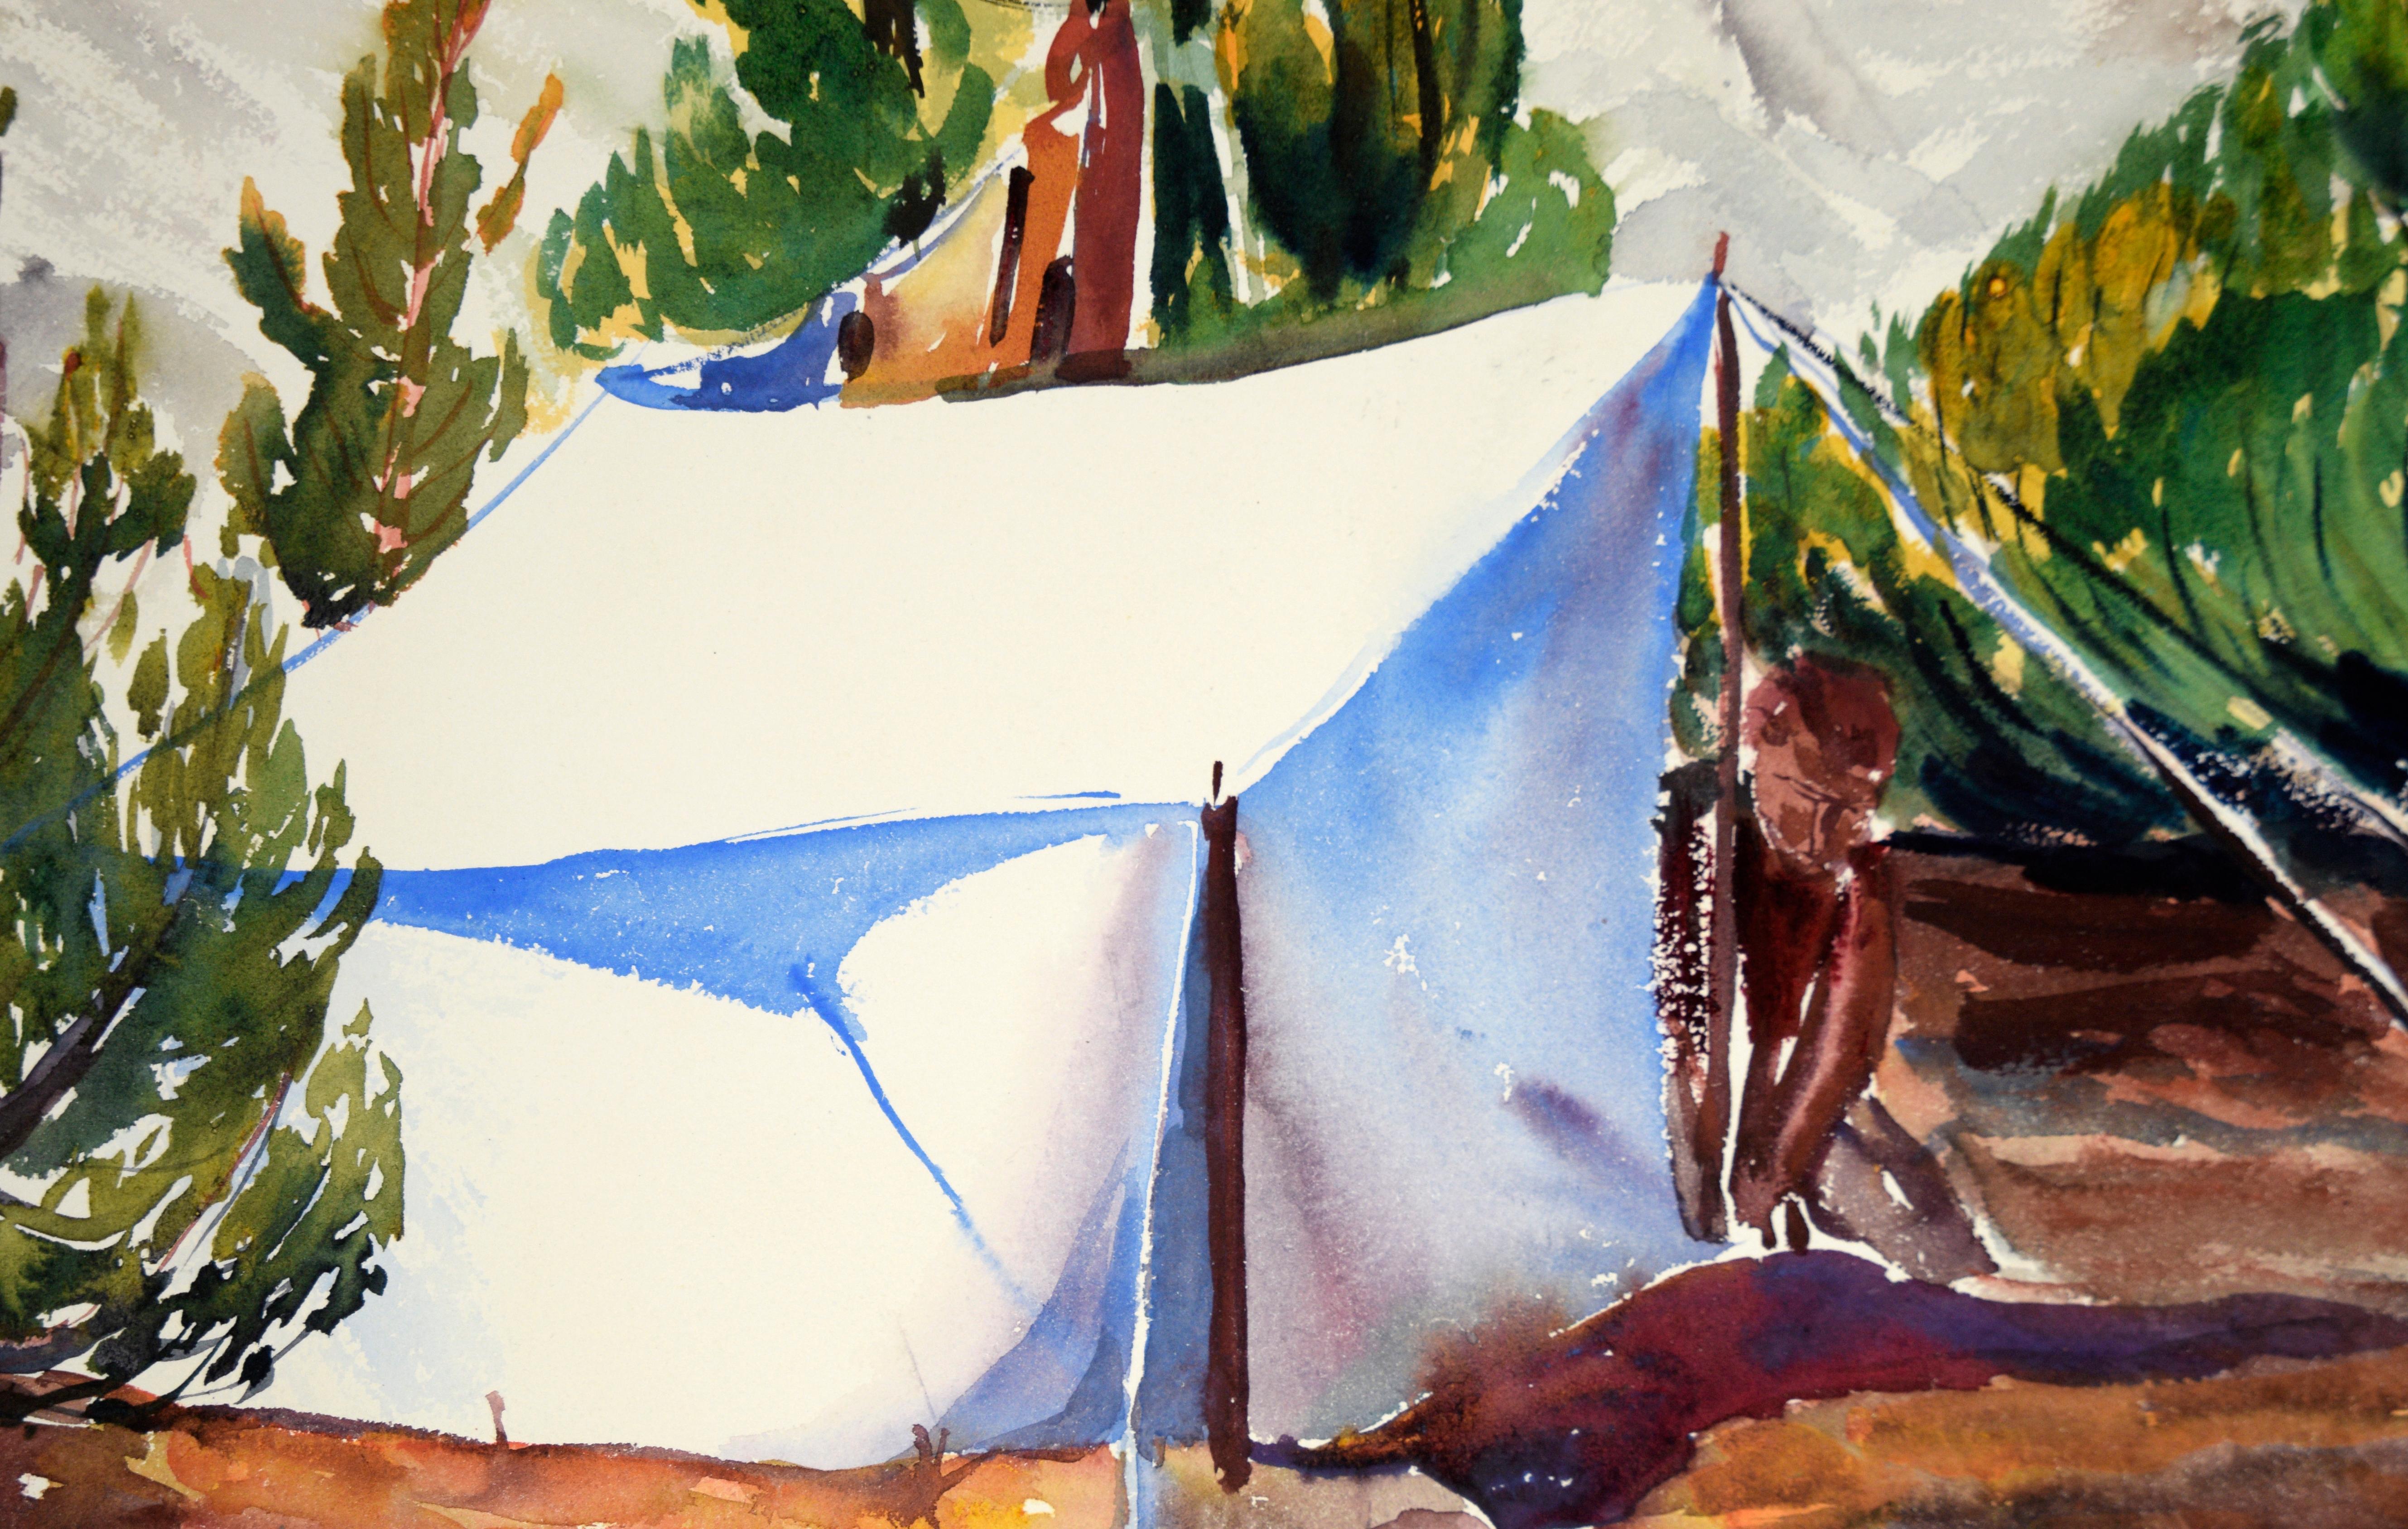 Staking a Tent, paysage moderniste à l'aquarelle sur papier

Paysage aquarellé vivant avec une personne plantant sa tente parmi des conifères bas et des montagnes enneigées en arrière-plan, par l'artiste californienne Lucile Marie Johnston